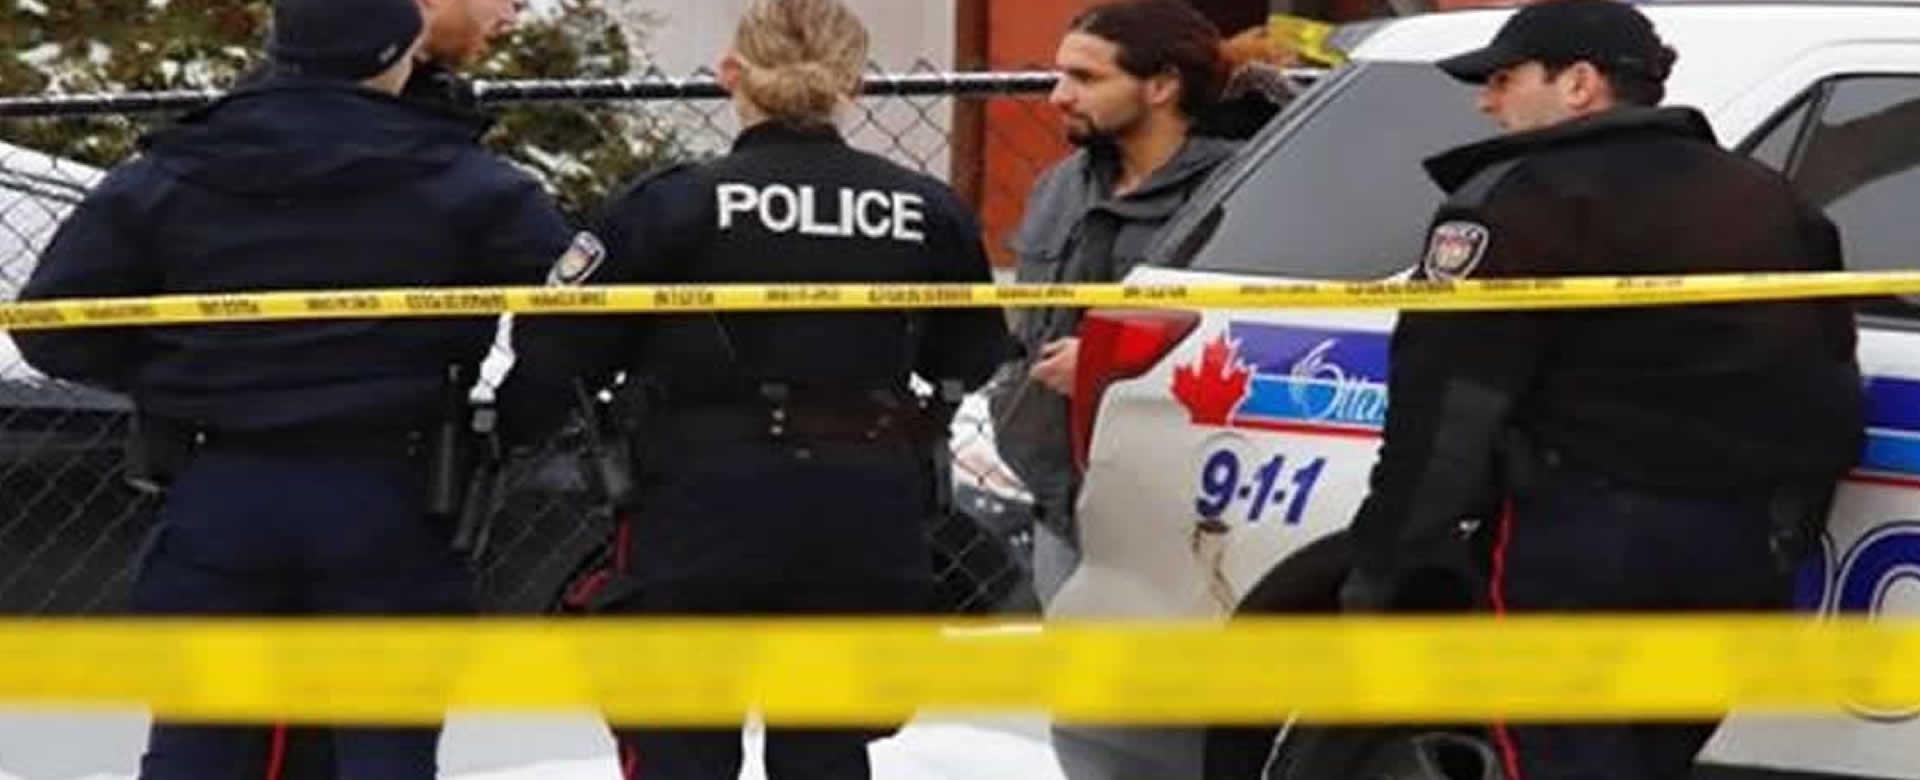 Canadá: Una persona fallecida y tres heridos tras tiroteo en Ottawa